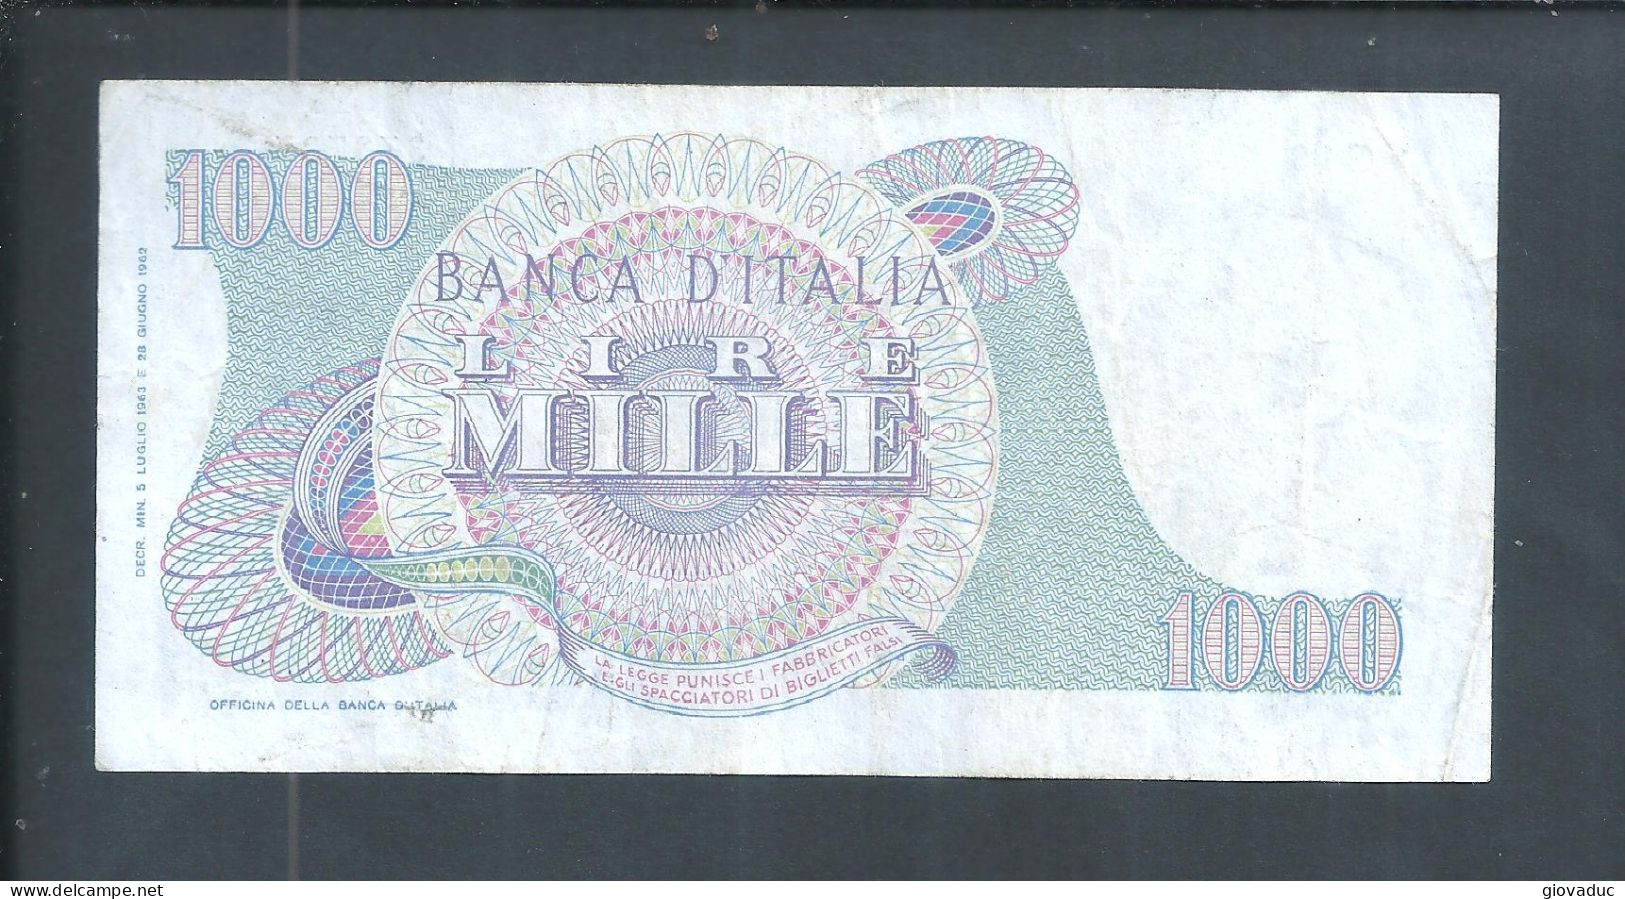 Banconota Italia 1000 Lire 28 Giugno 1962 - Rarita Unica N° C18 - 373737 - Filigrana - Vedi Foto Firme Carli-Ripa - - [ 7] Errori & Varietà